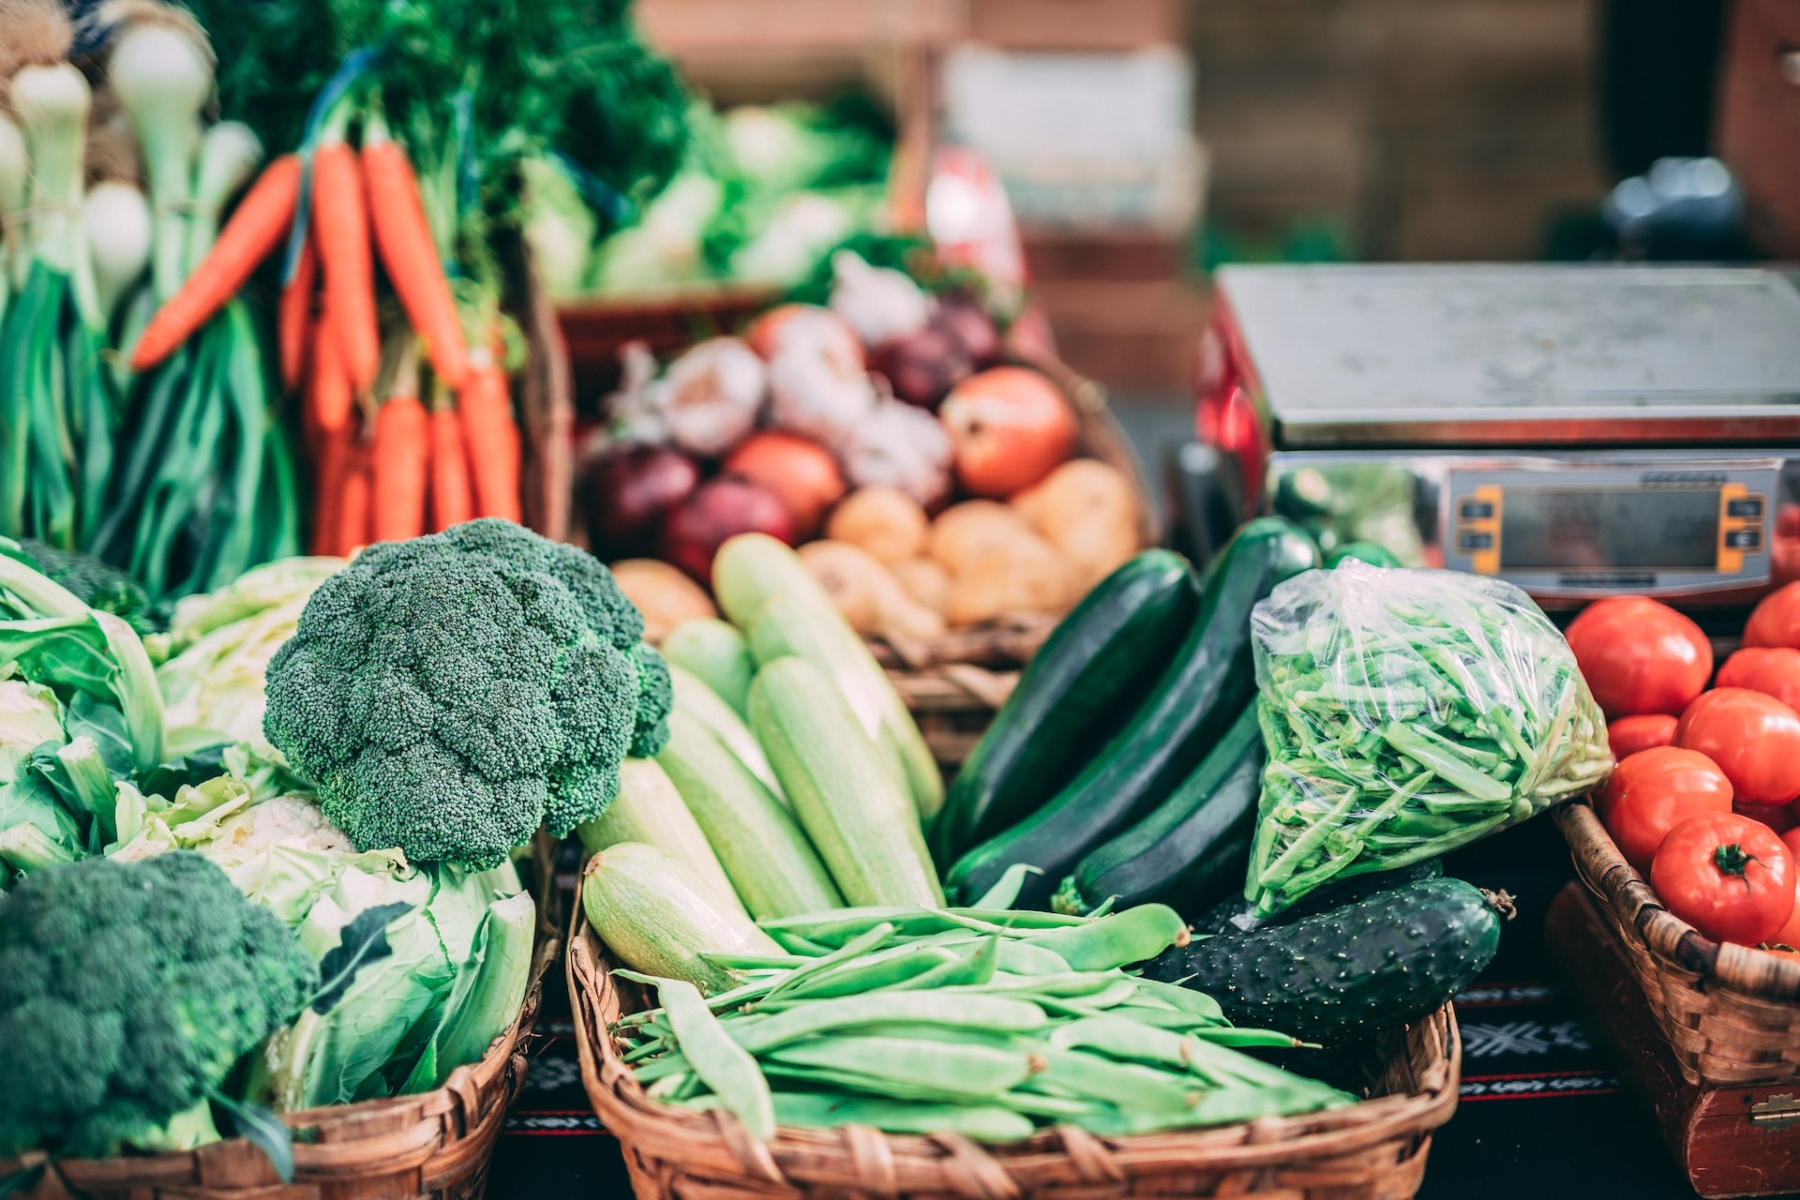 Λαχανικά πρωτεΐνη: Ποια είναι τα λαχανικά με υψηλή περιεκτικότητα πρωτεΐνης;